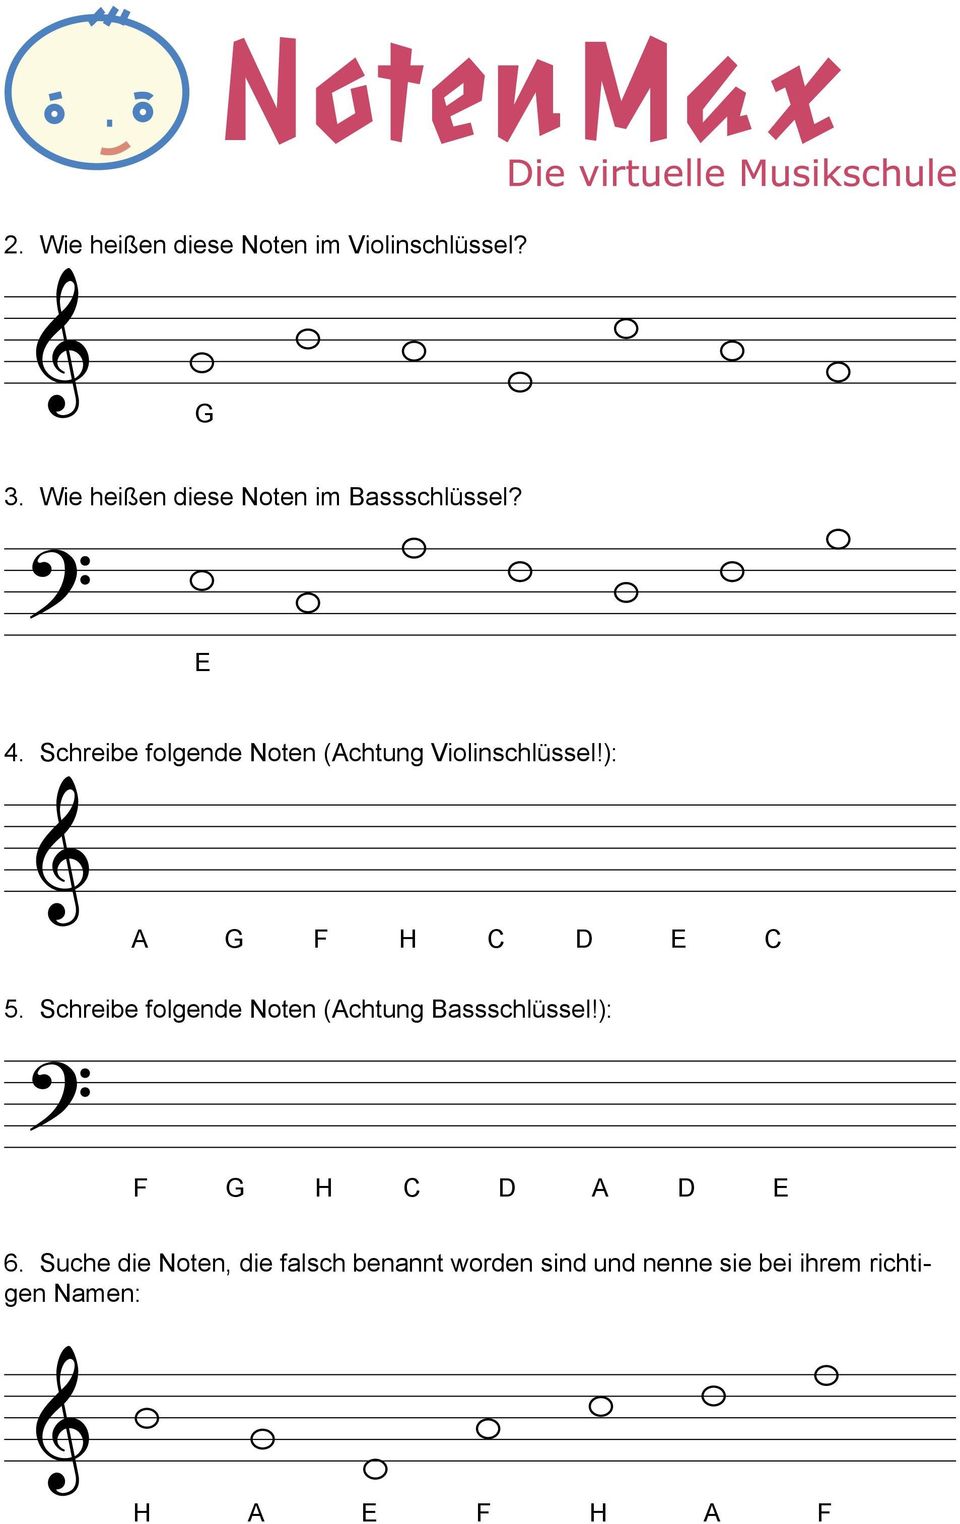 Schreibe folgende Noten (Achtung Violinschlüssel!): A G F H C D E C 5.